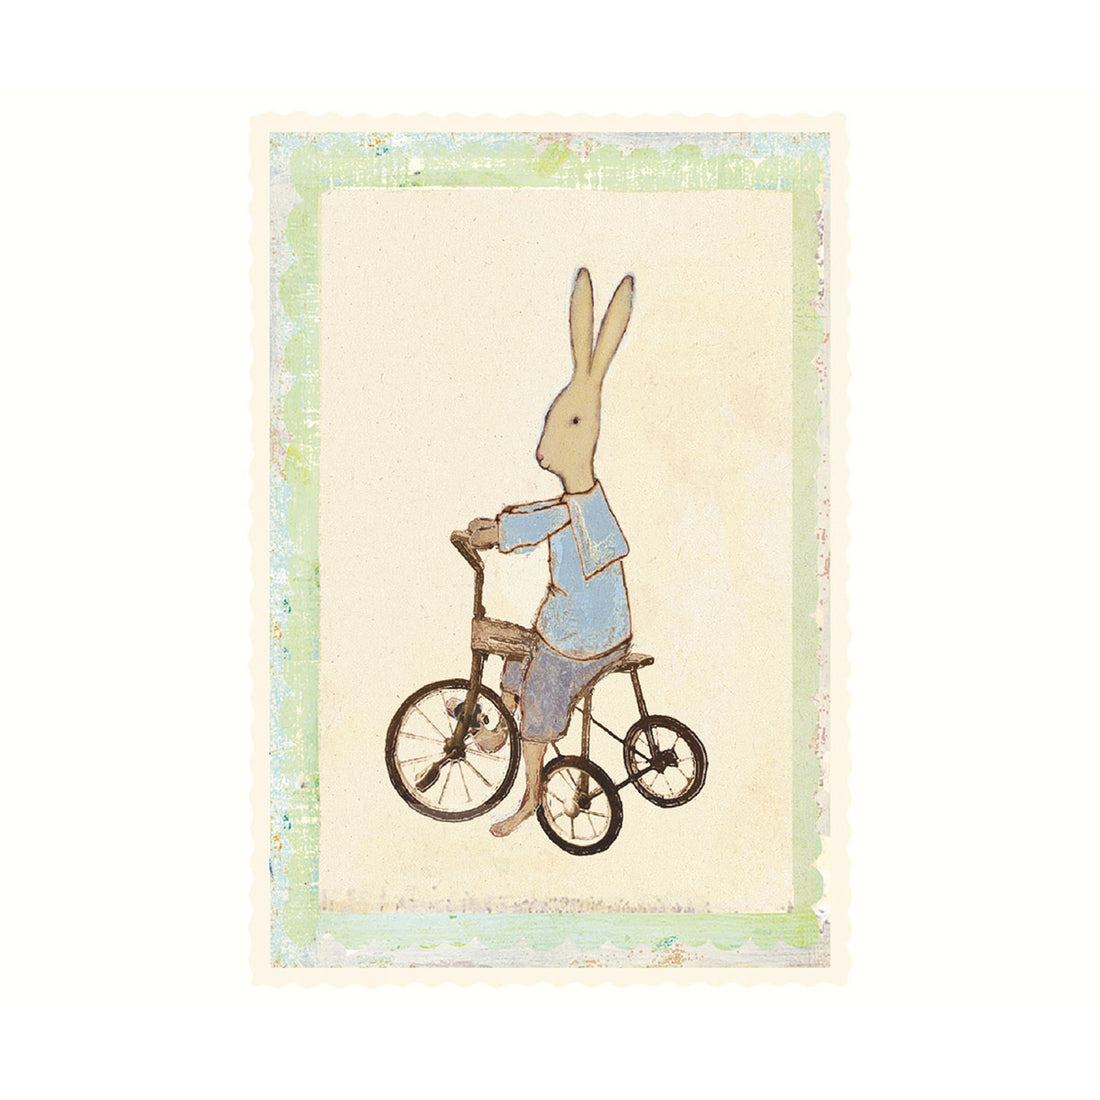 maileg-single-card-rabbit-boy-on-bike-01